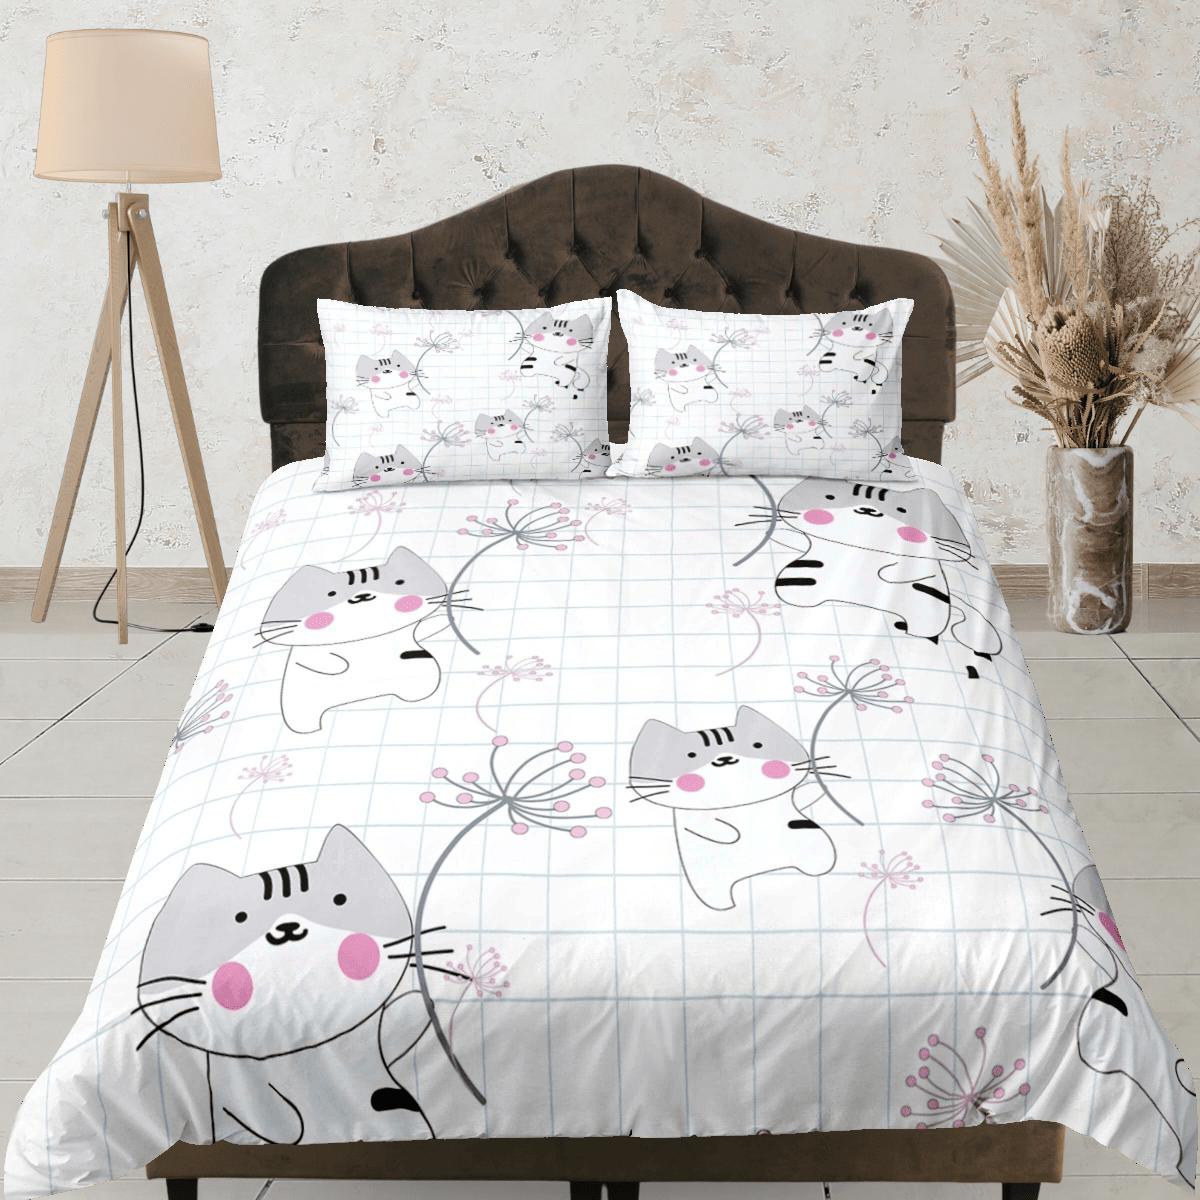 daintyduvet Cute grey cat bedding, cat holding dandelion toddler bedding, kids duvet cover set, gift for cat lovers, baby bedding, baby shower gift